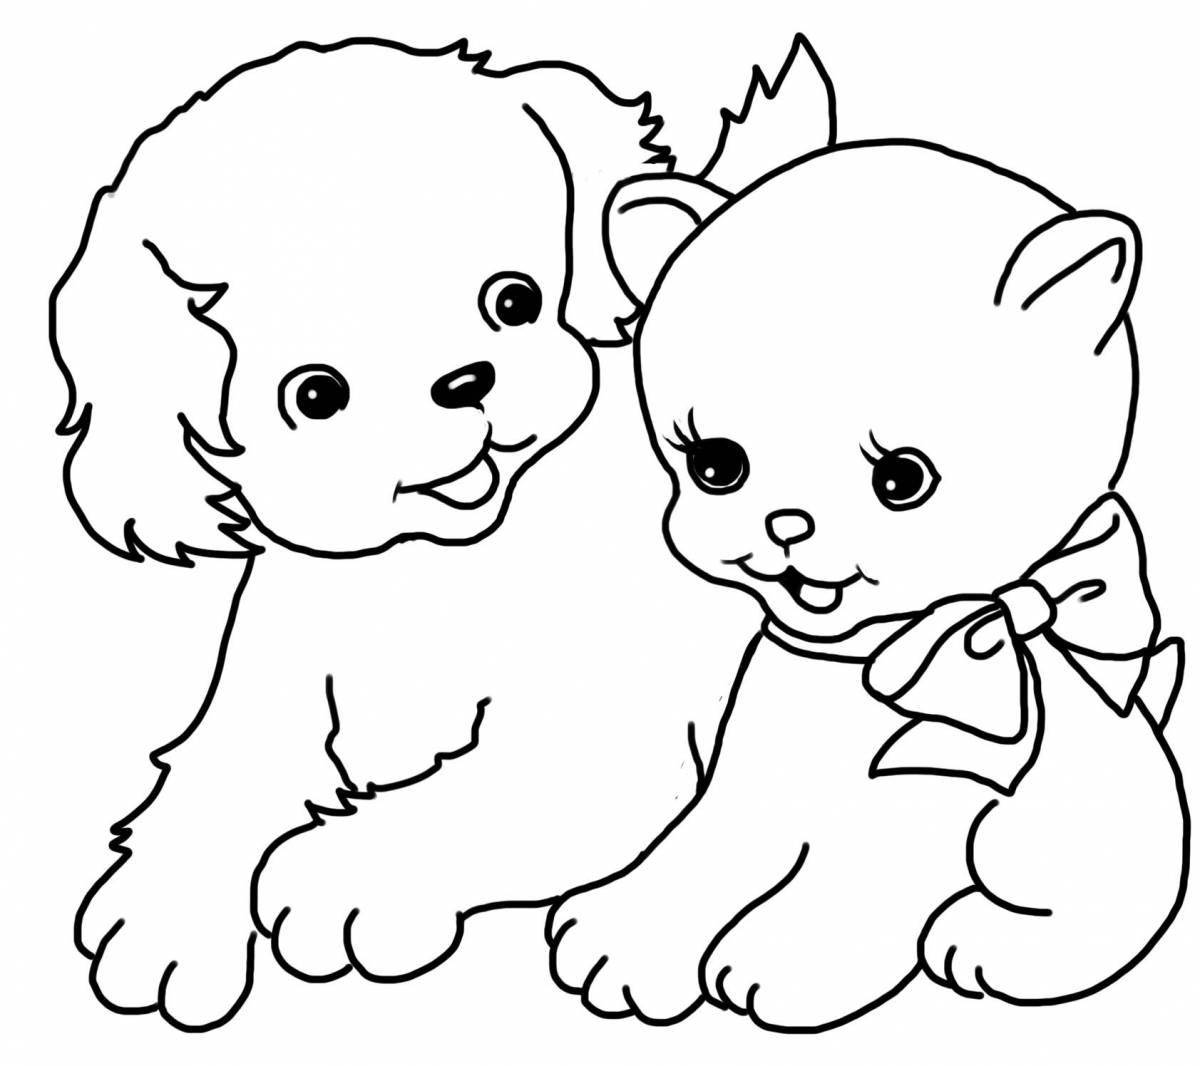 Snuggly раскраска животные кошки и собаки